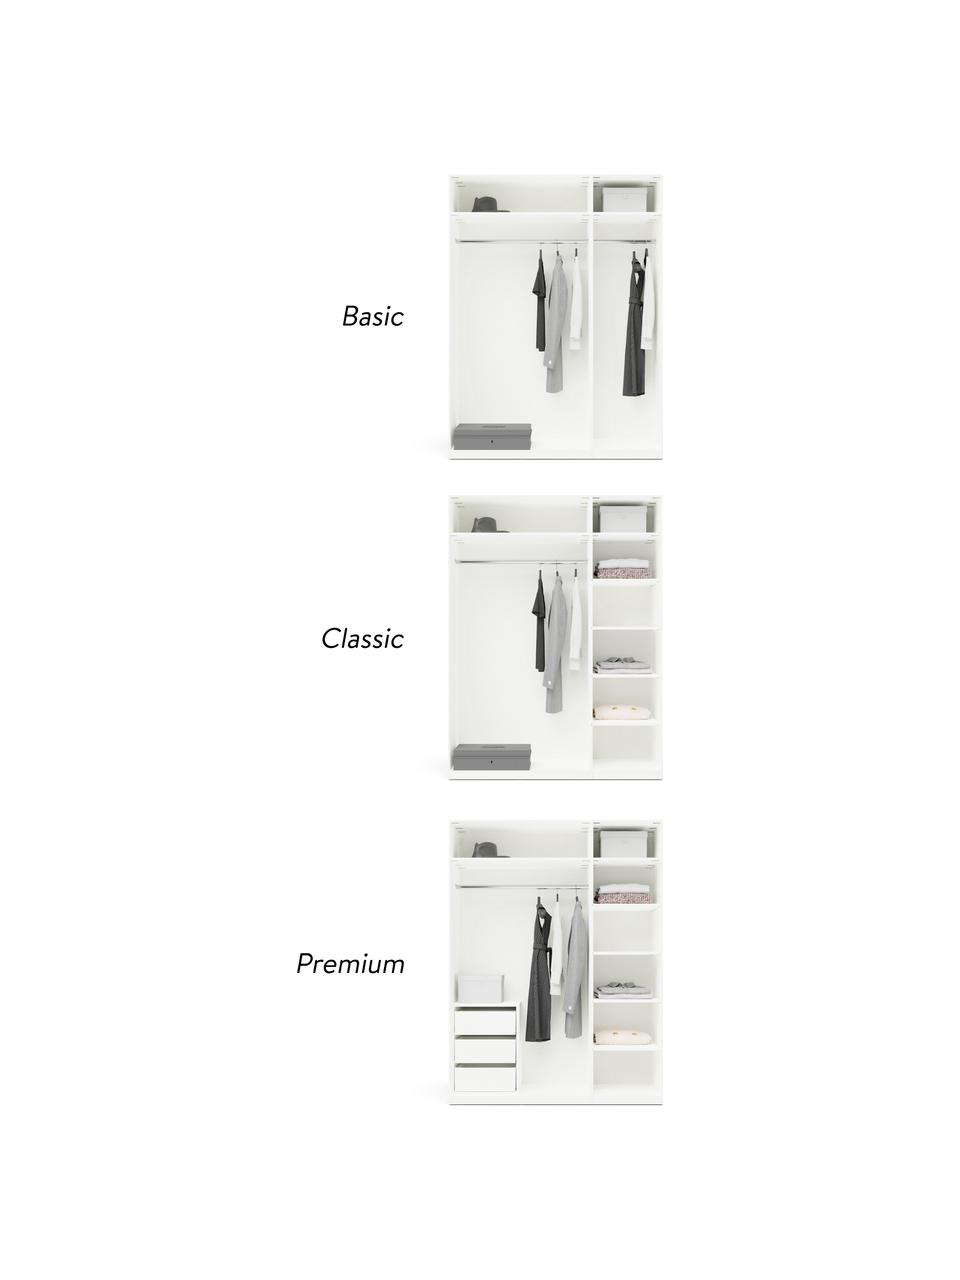 Szafa modułowa Charlotte, 150 cm, różne warianty, Korpus: płyta wiórowa z certyfika, Biały, S 150 x W 200 cm, Premium